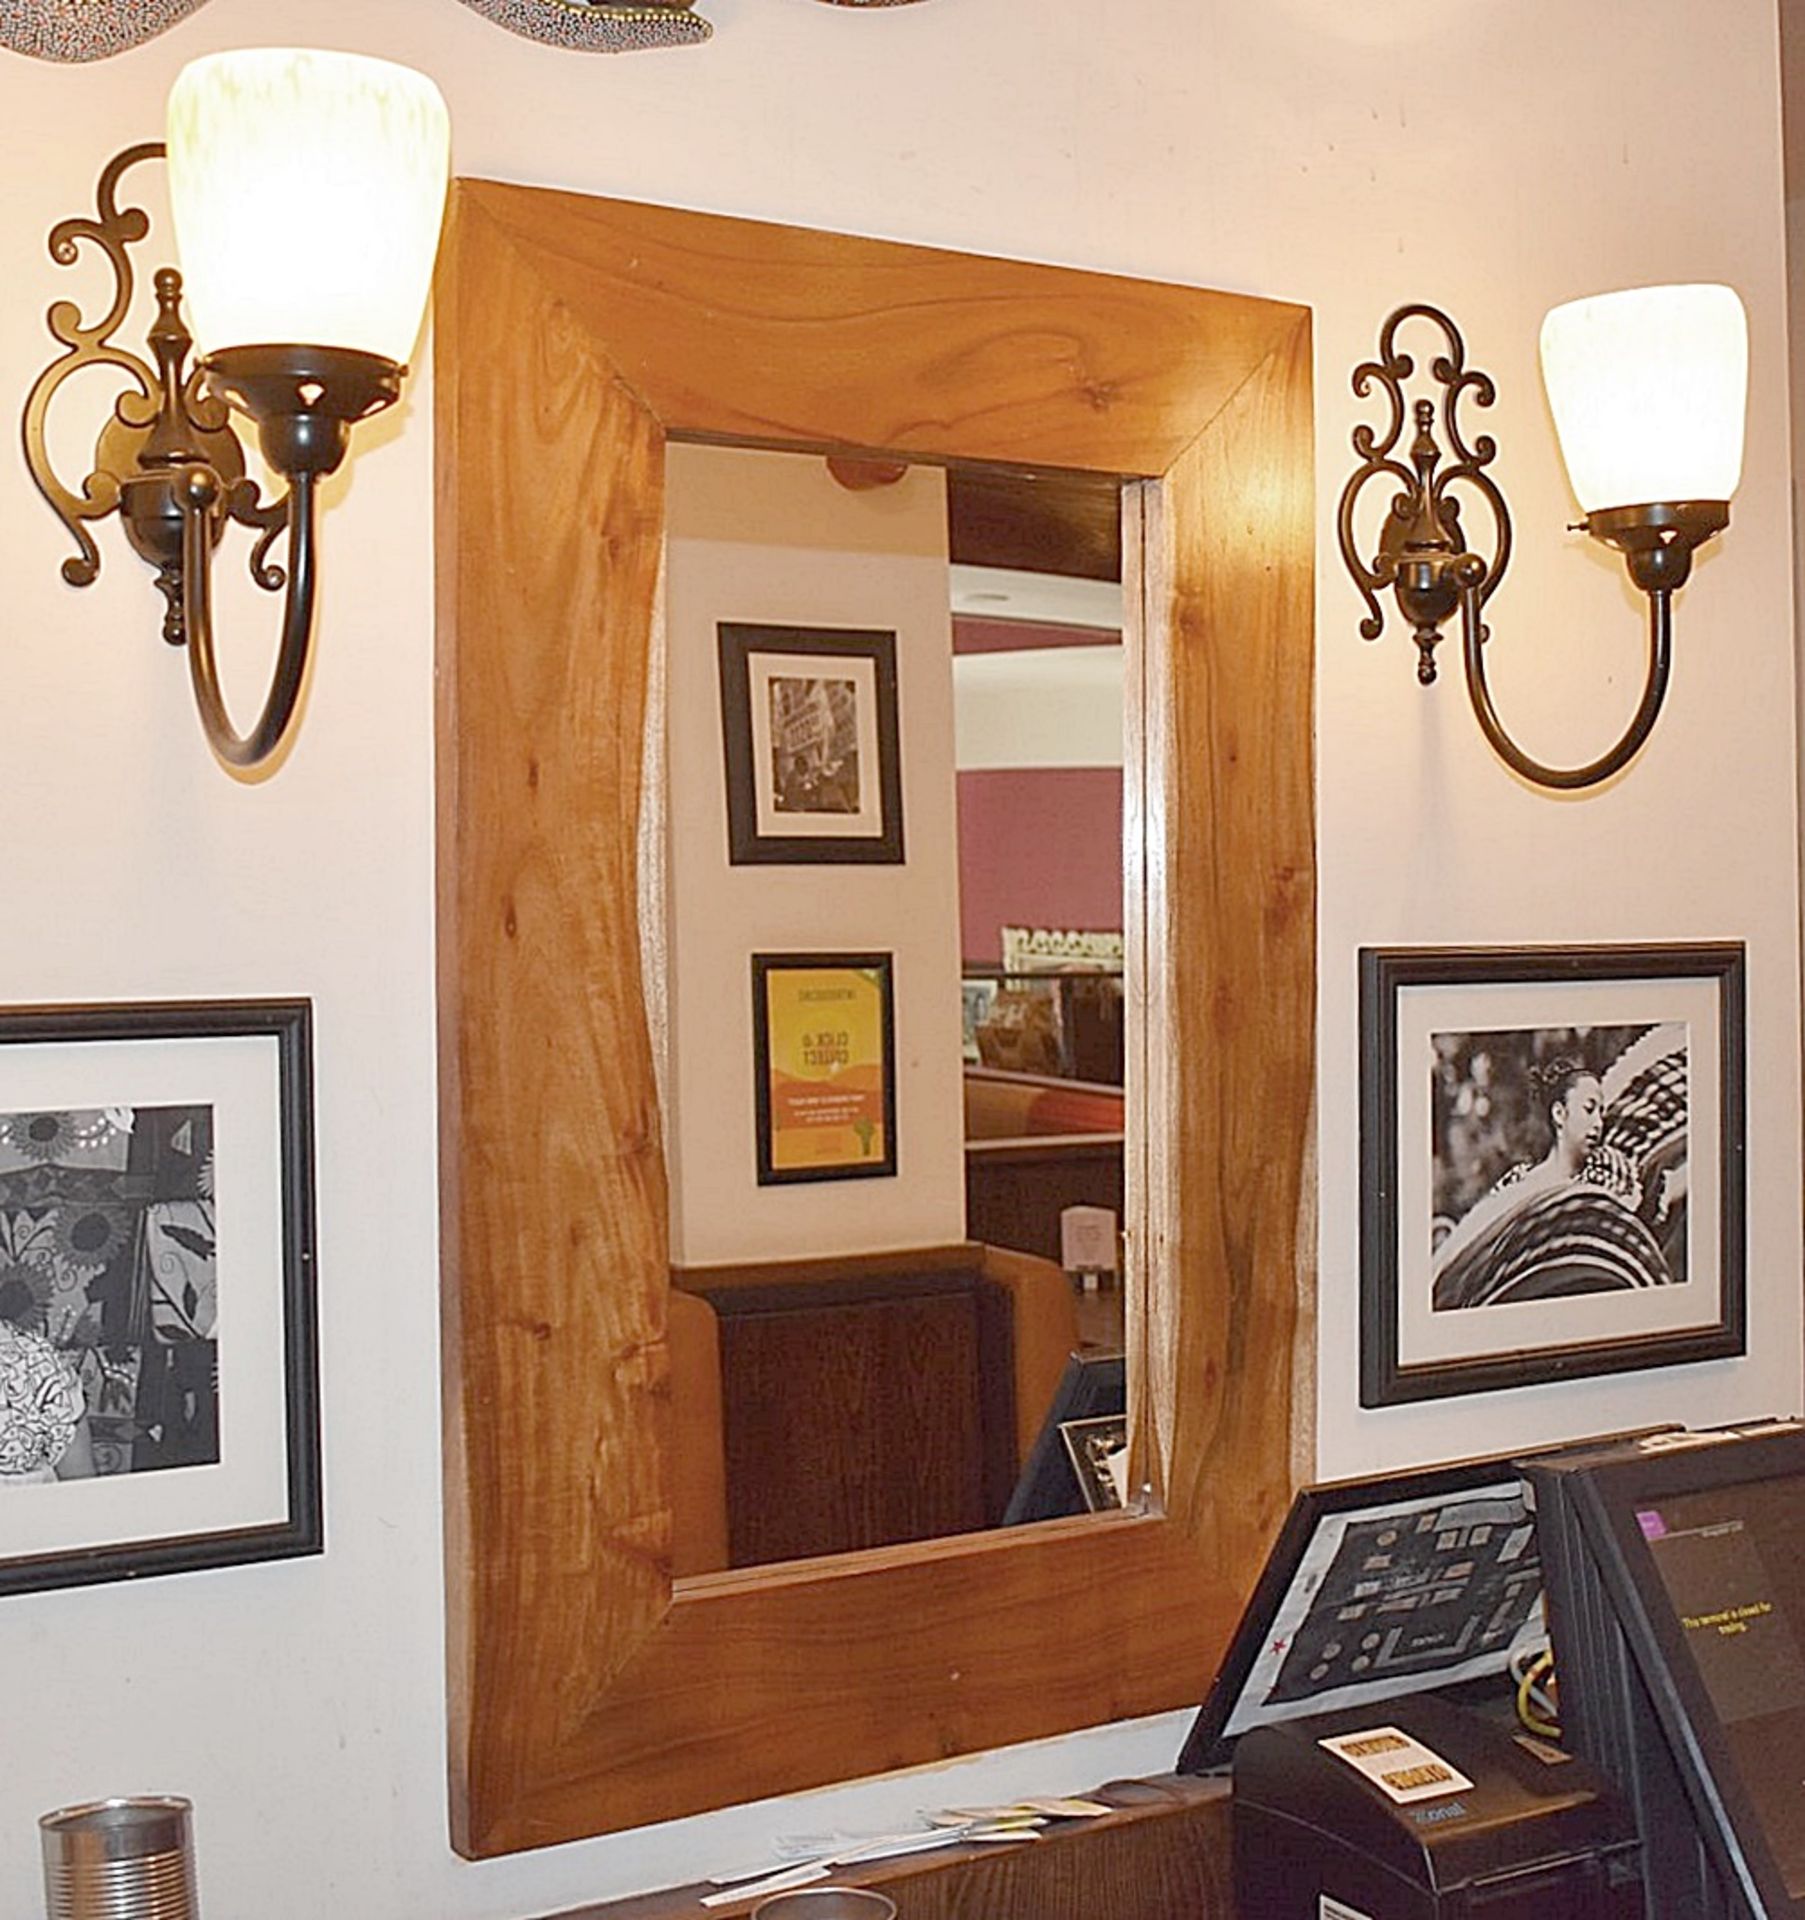 1 x Rustic Wood Framed Mirror - Dimensions: 60 x 90cm